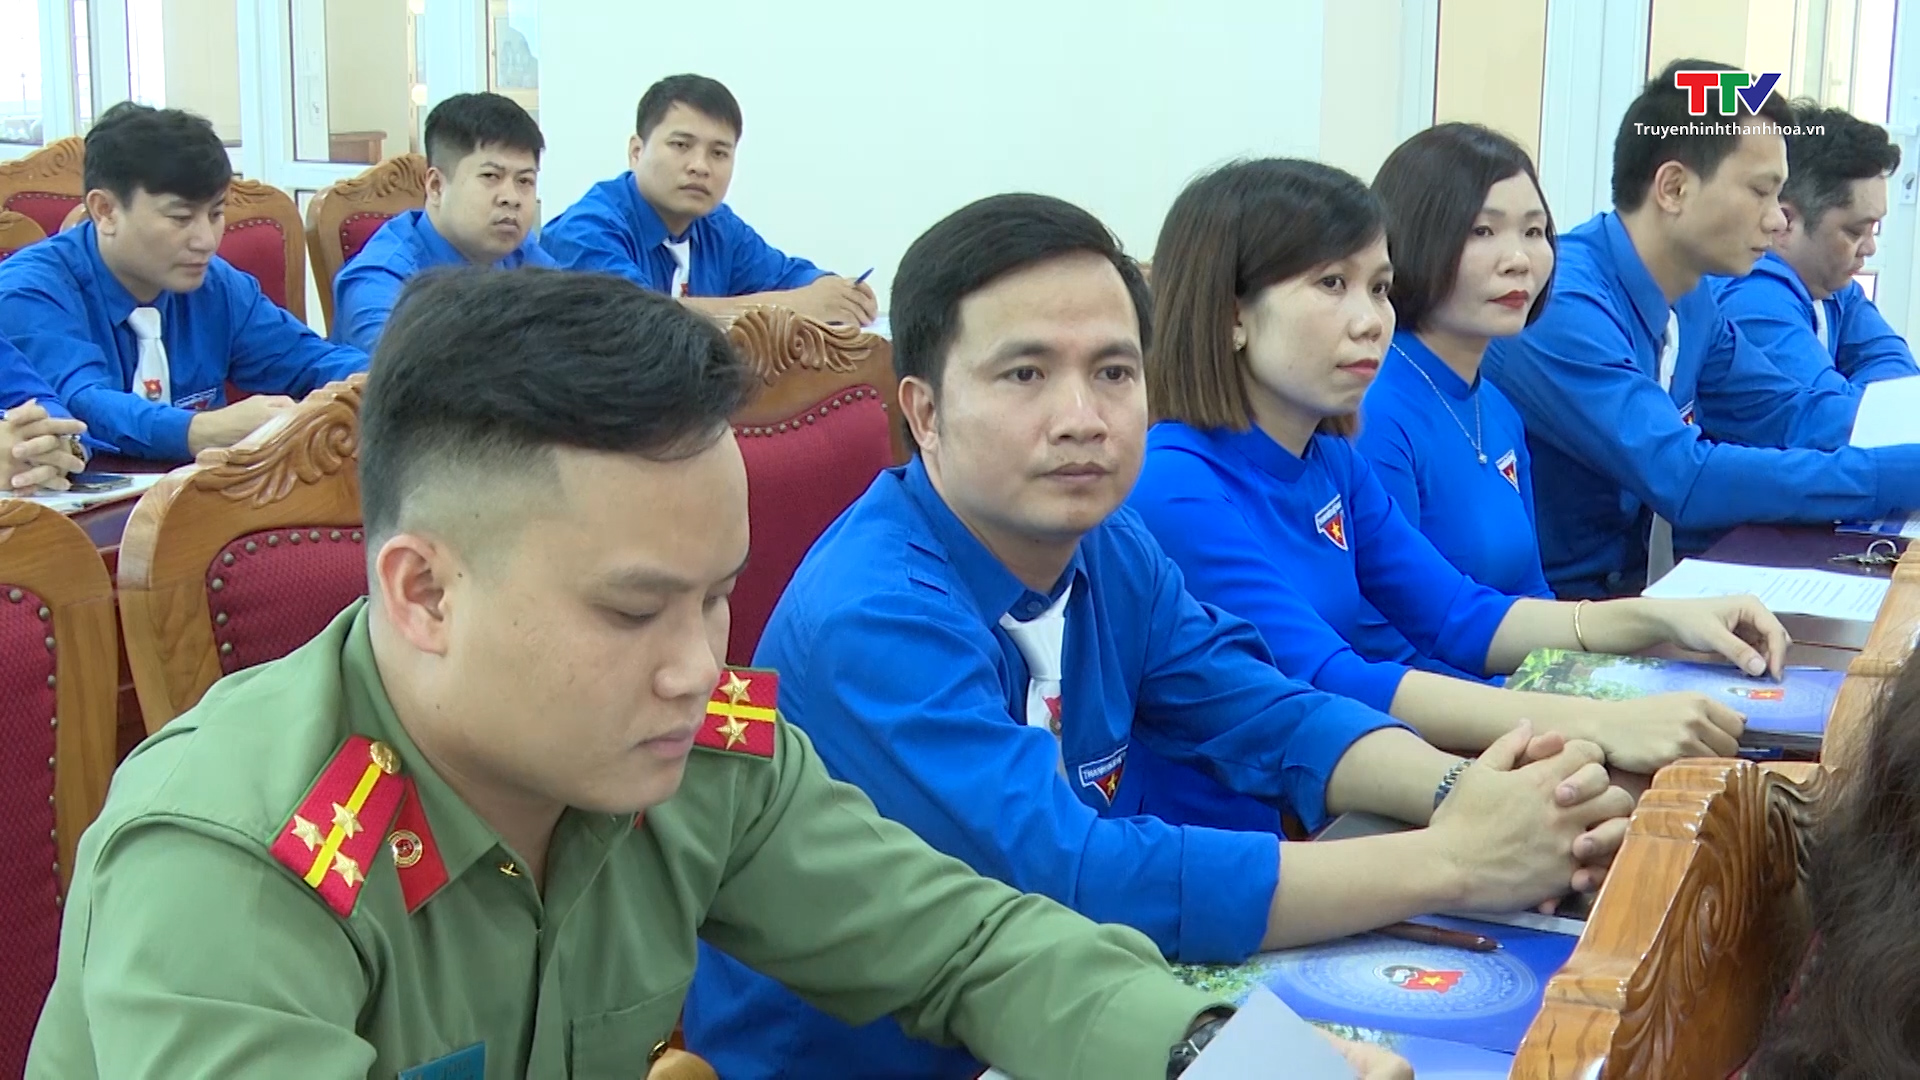 Huyện ủy Thọ Xuân gặp mặt cán bộ Đoàn chủ chốt nhân dịp kỷ niệm 93 năm ngày thành lập Đoàn- Ảnh 2.